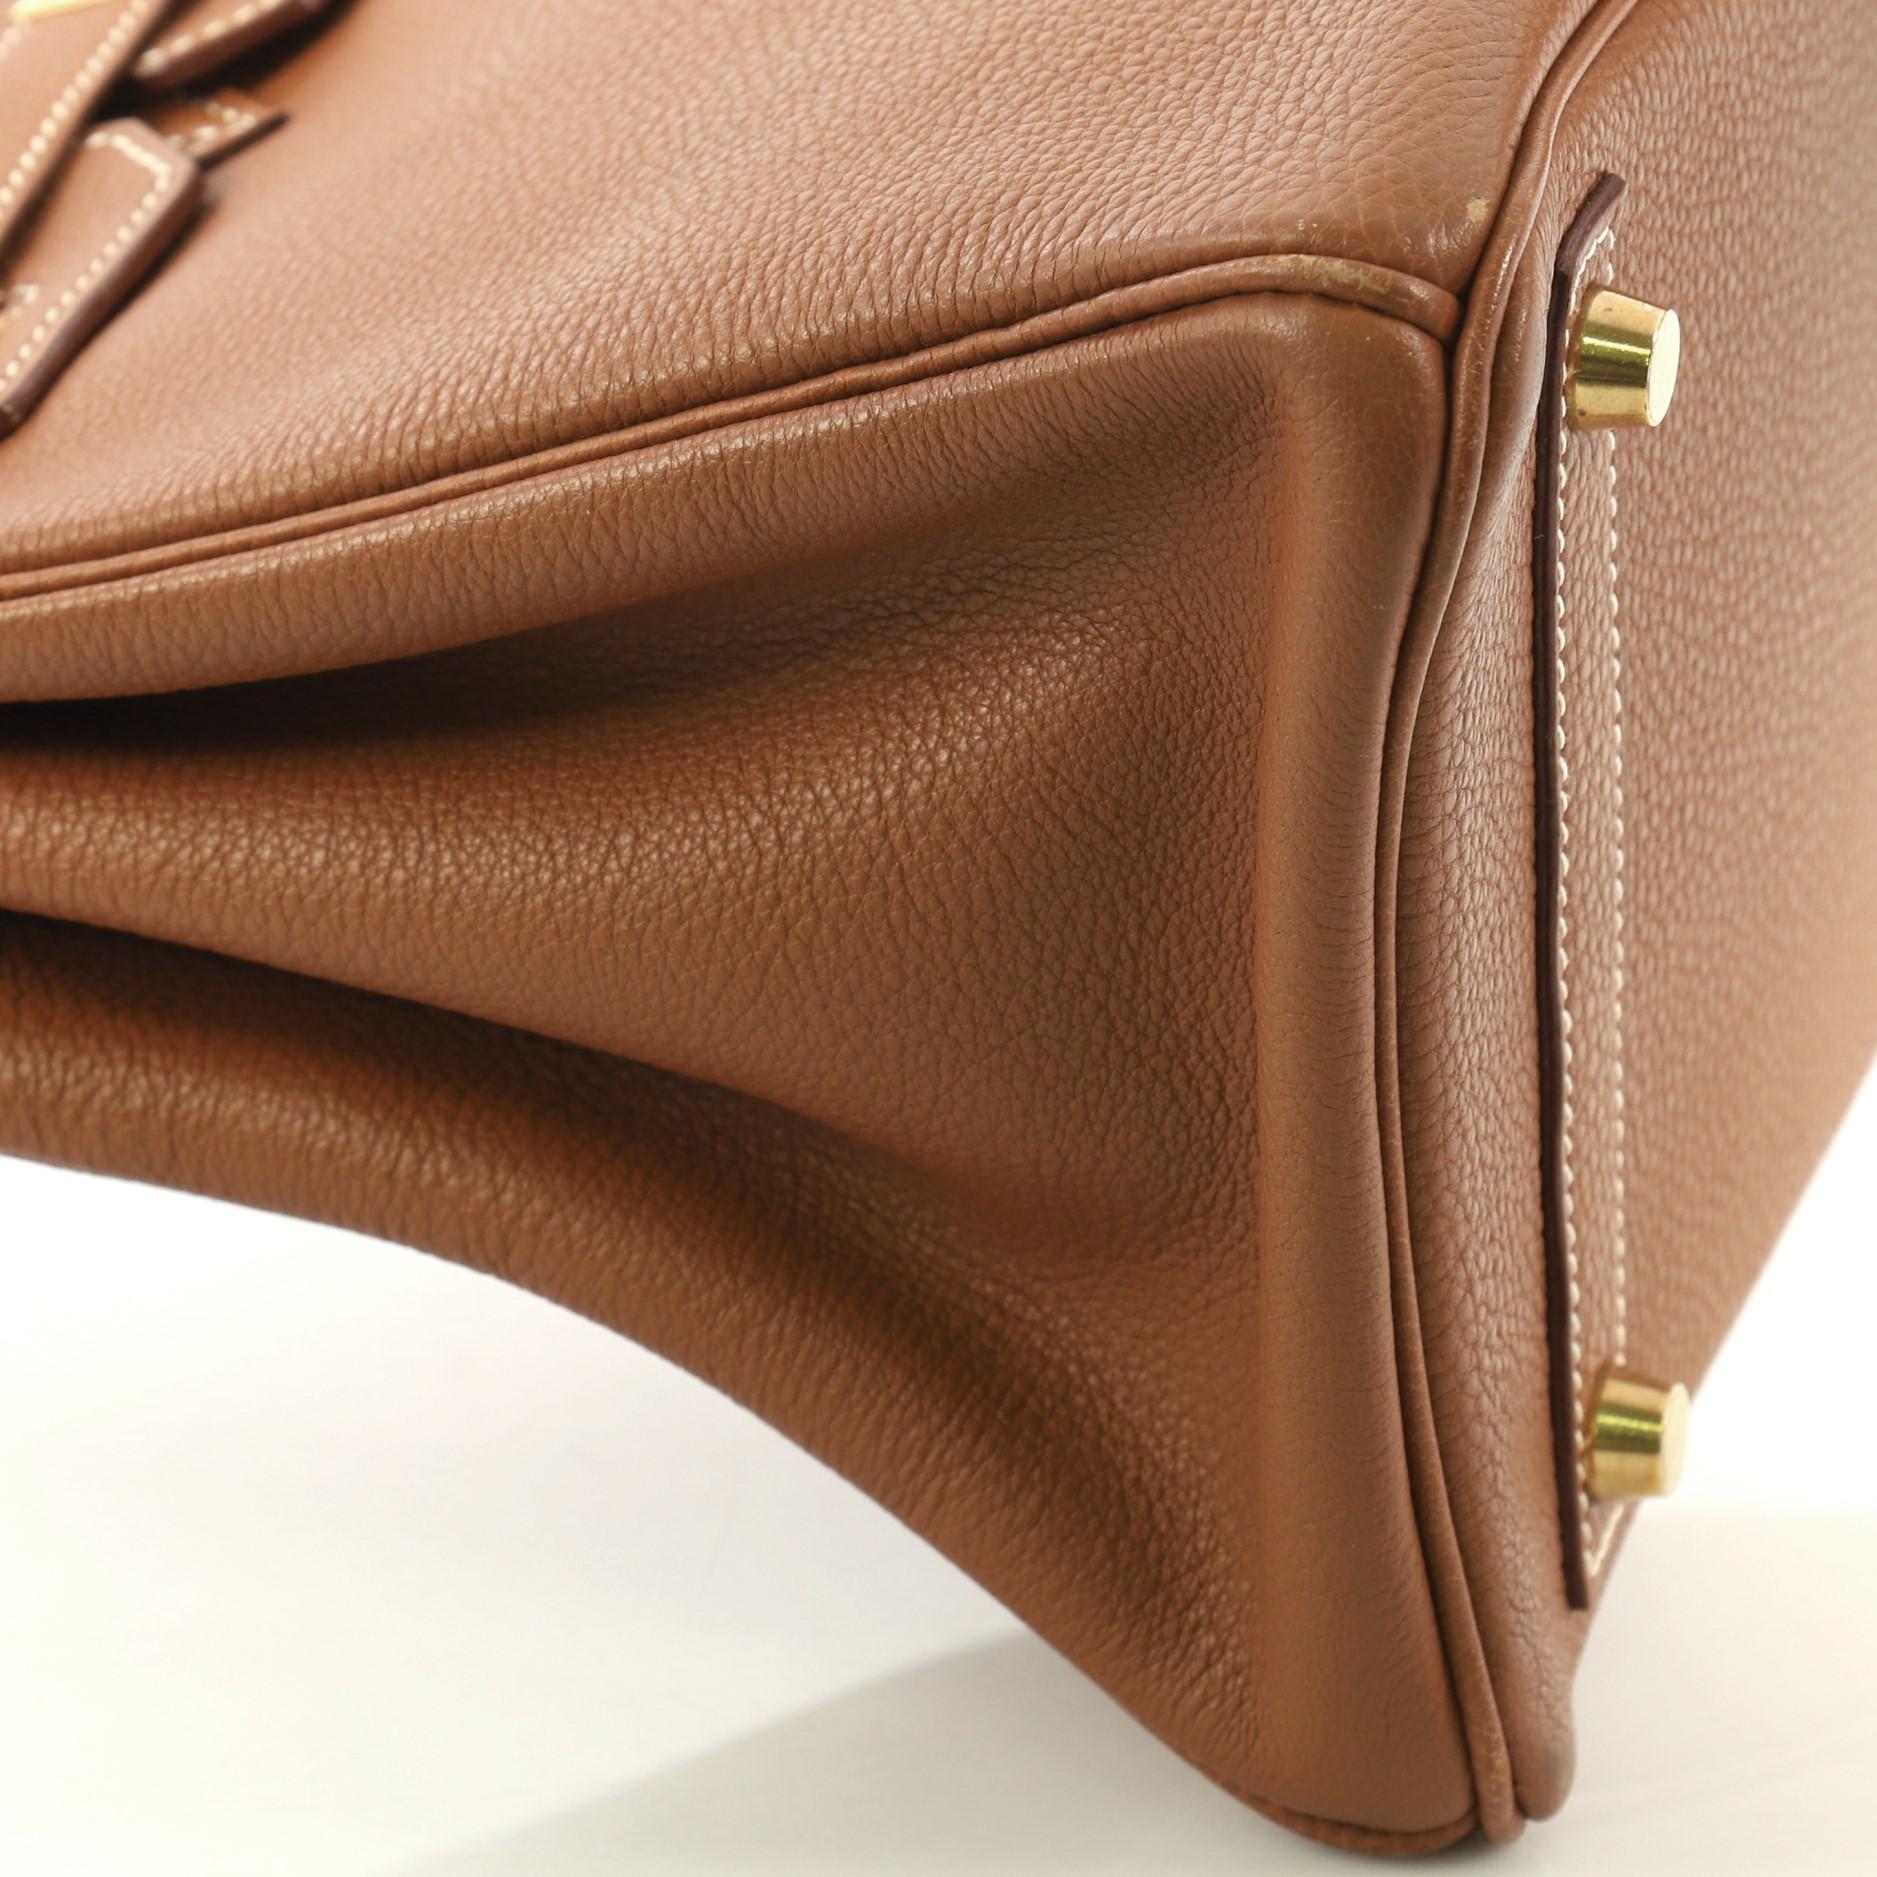 Hermes Birkin Handbag Gold Togo with Gold Hardware 30 For Sale 1